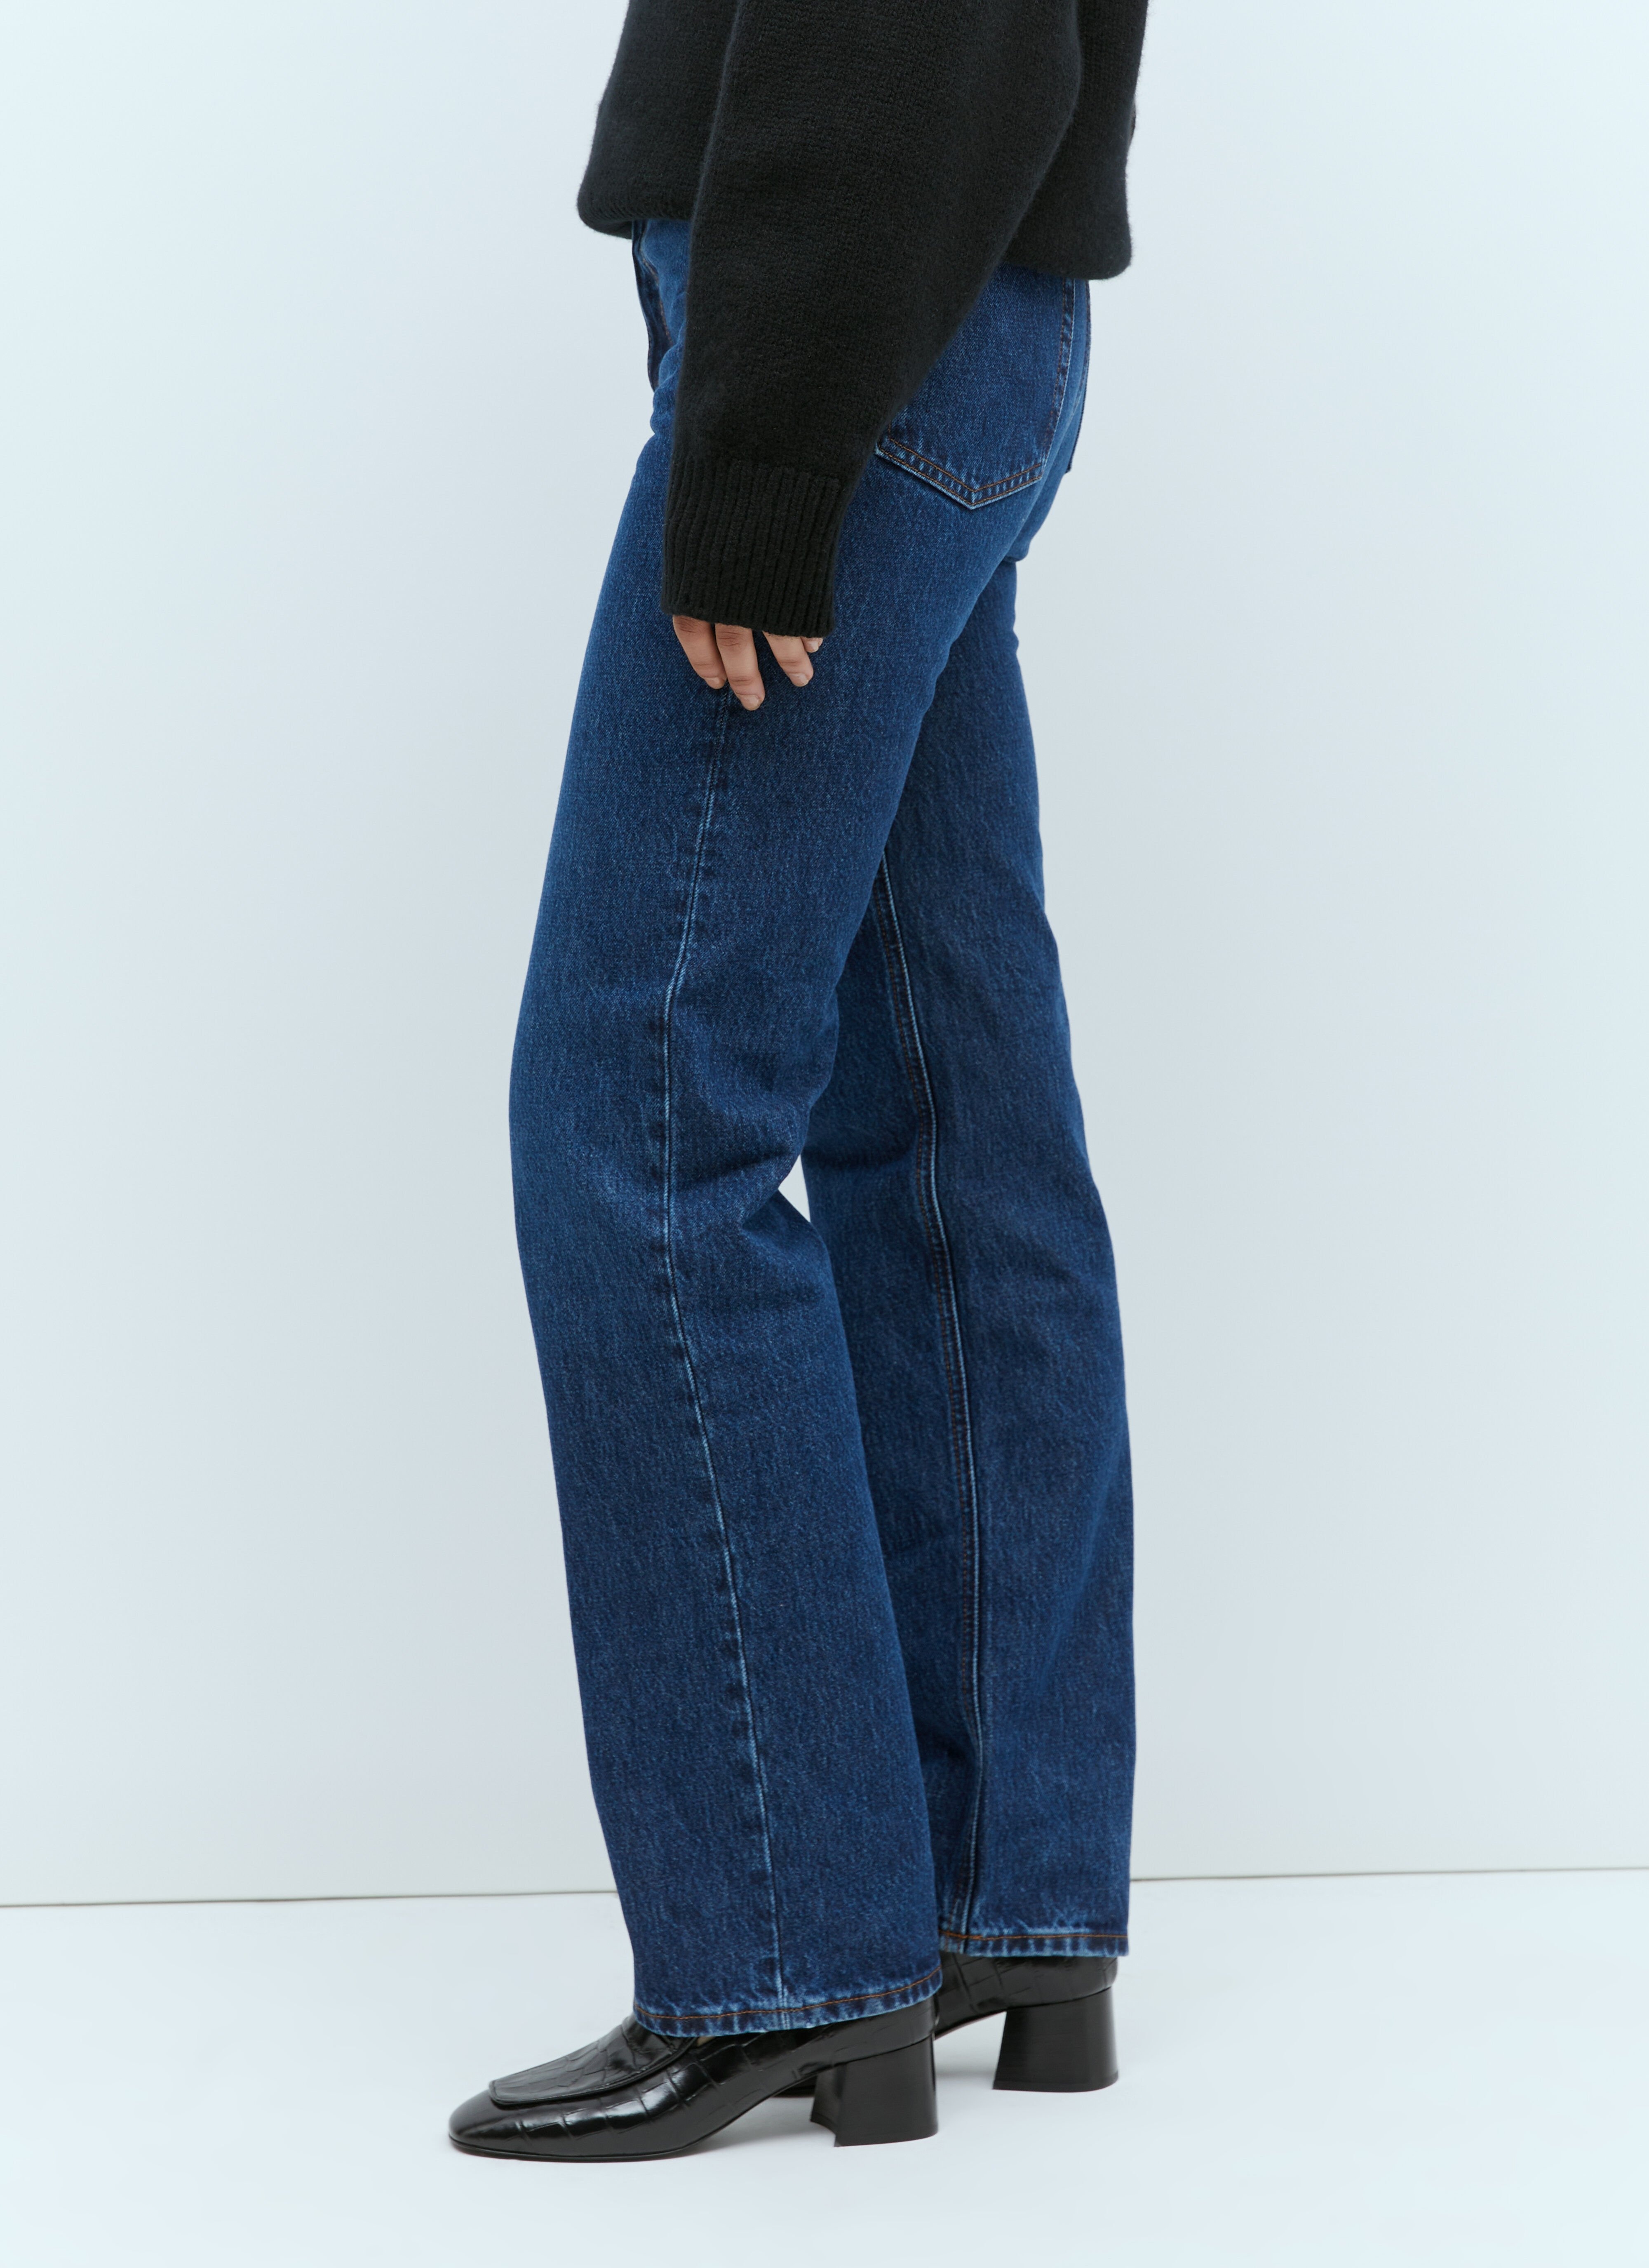 Classic Cut Denim Jeans - 2